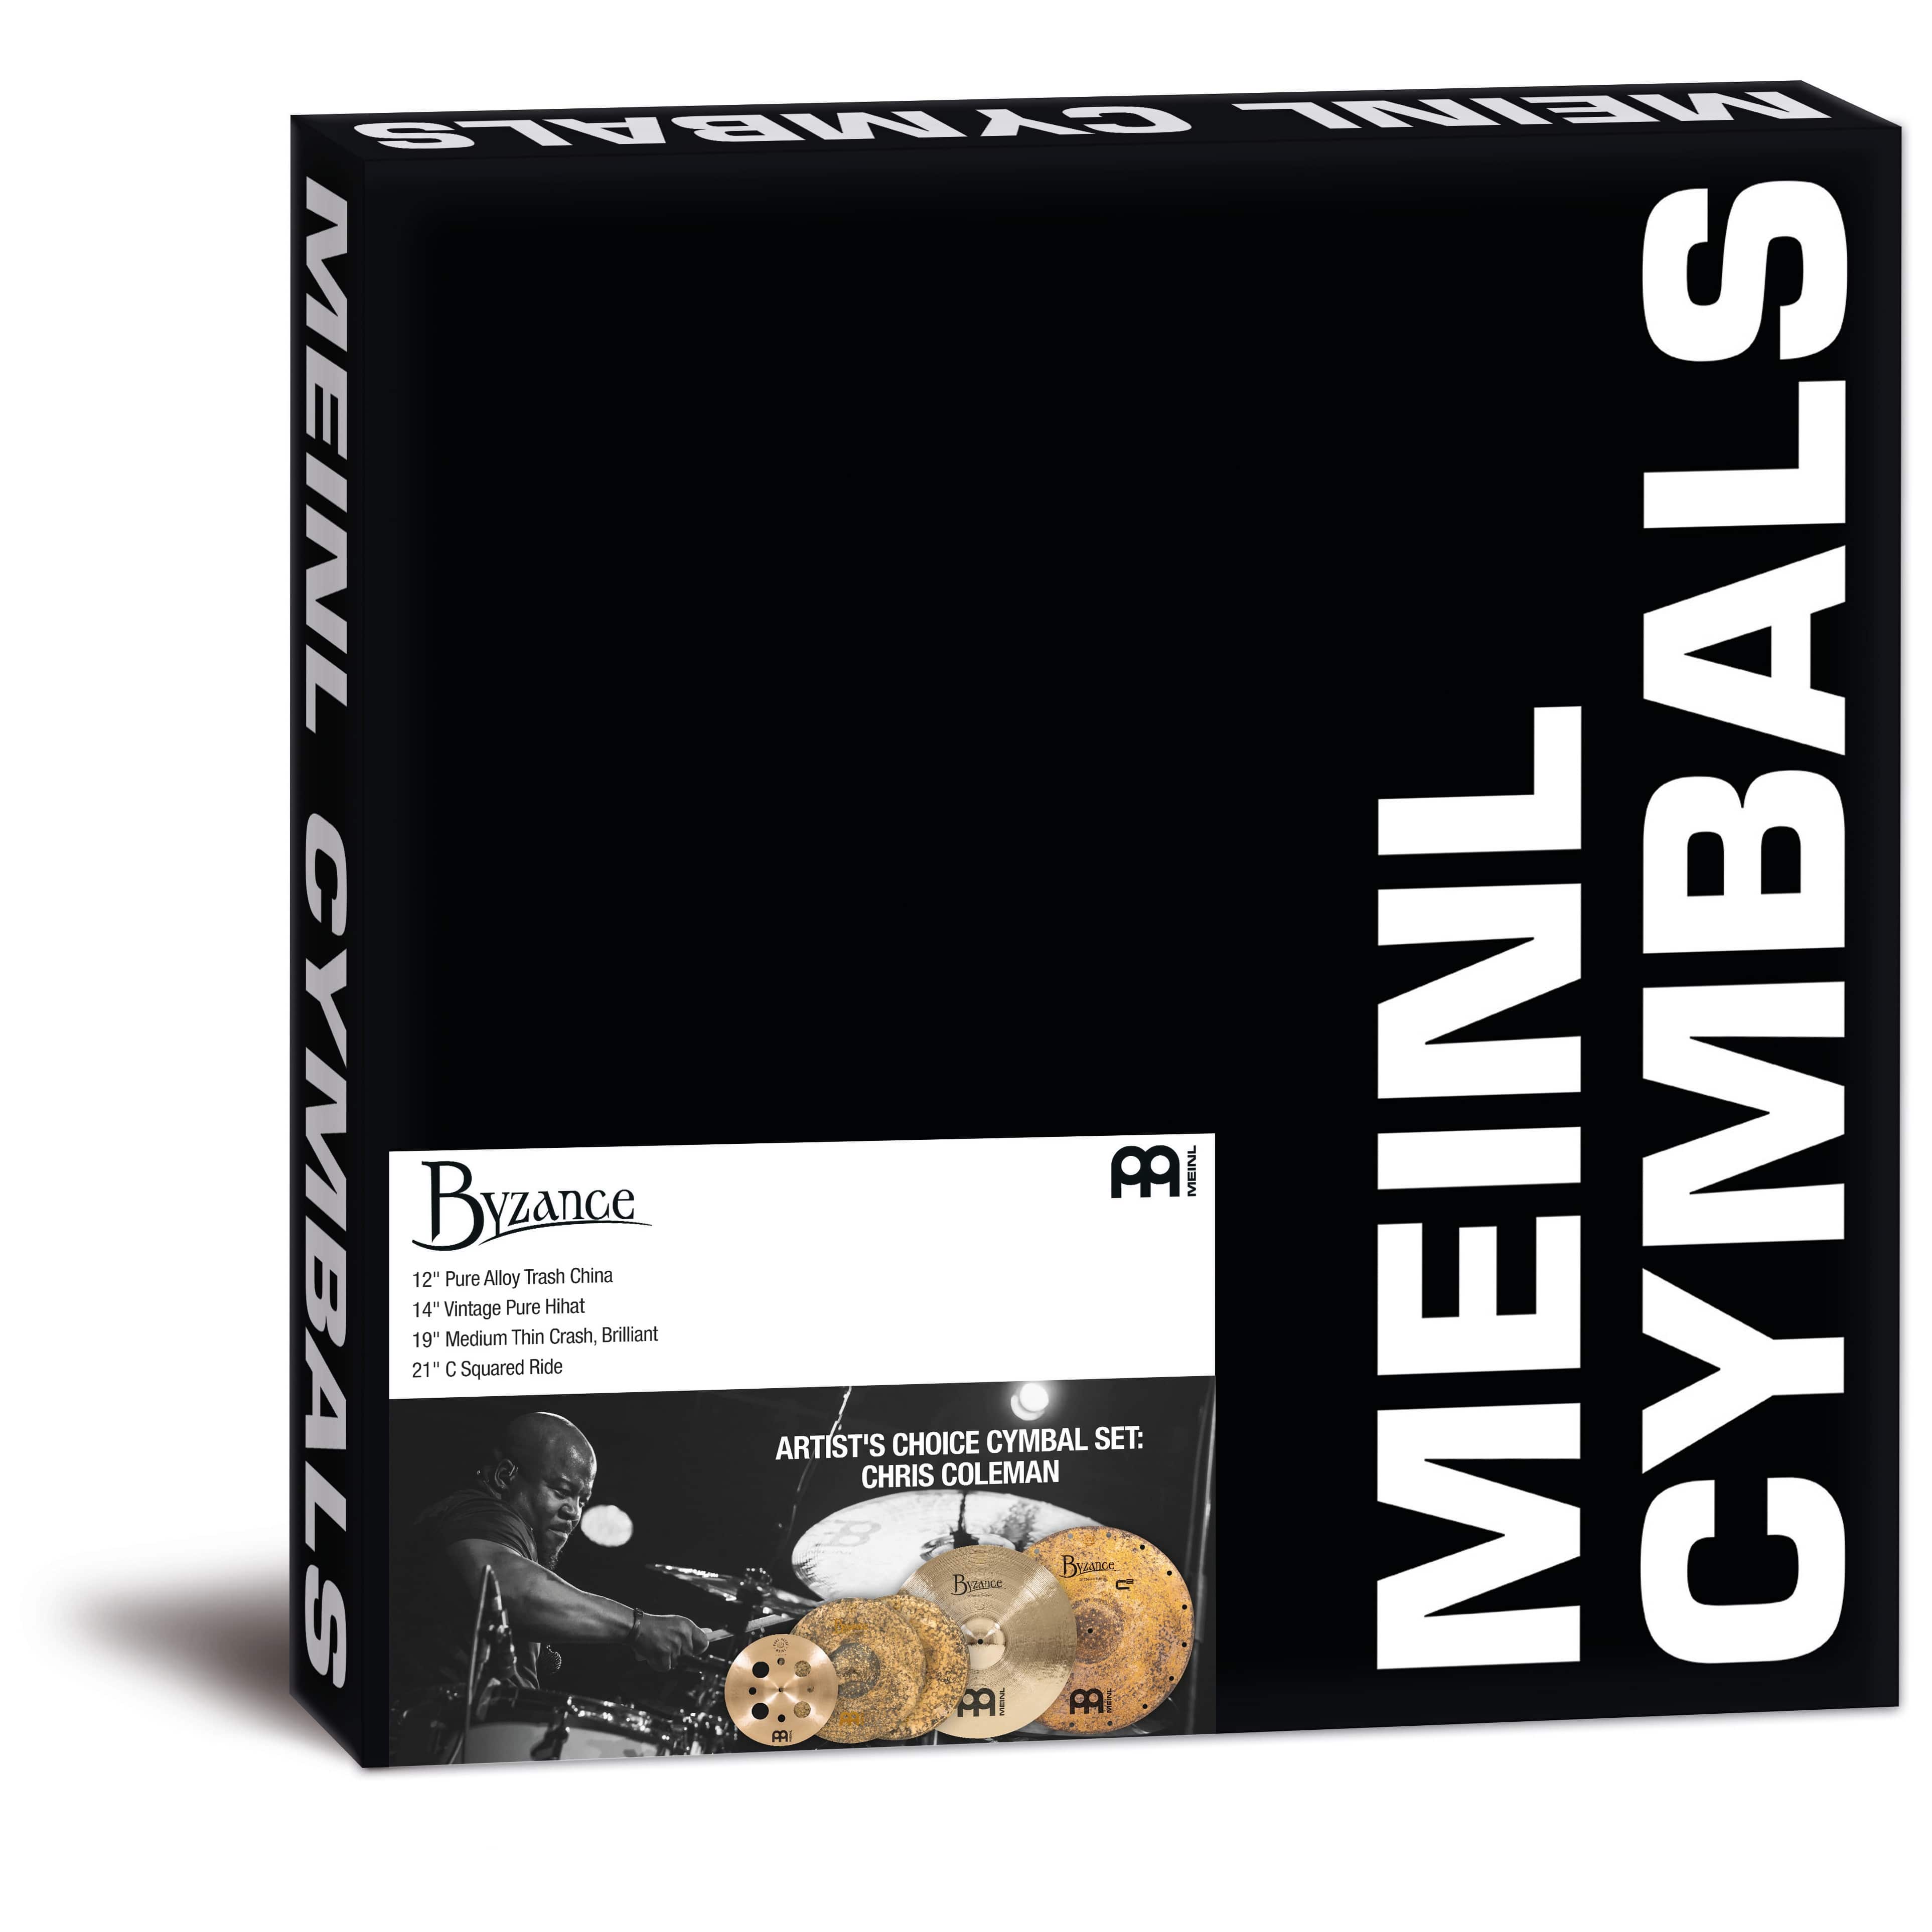 Meinl Cymbals A-CS5 - Byzance Artist's Choice Cymbal Set: Chris Coleman 2